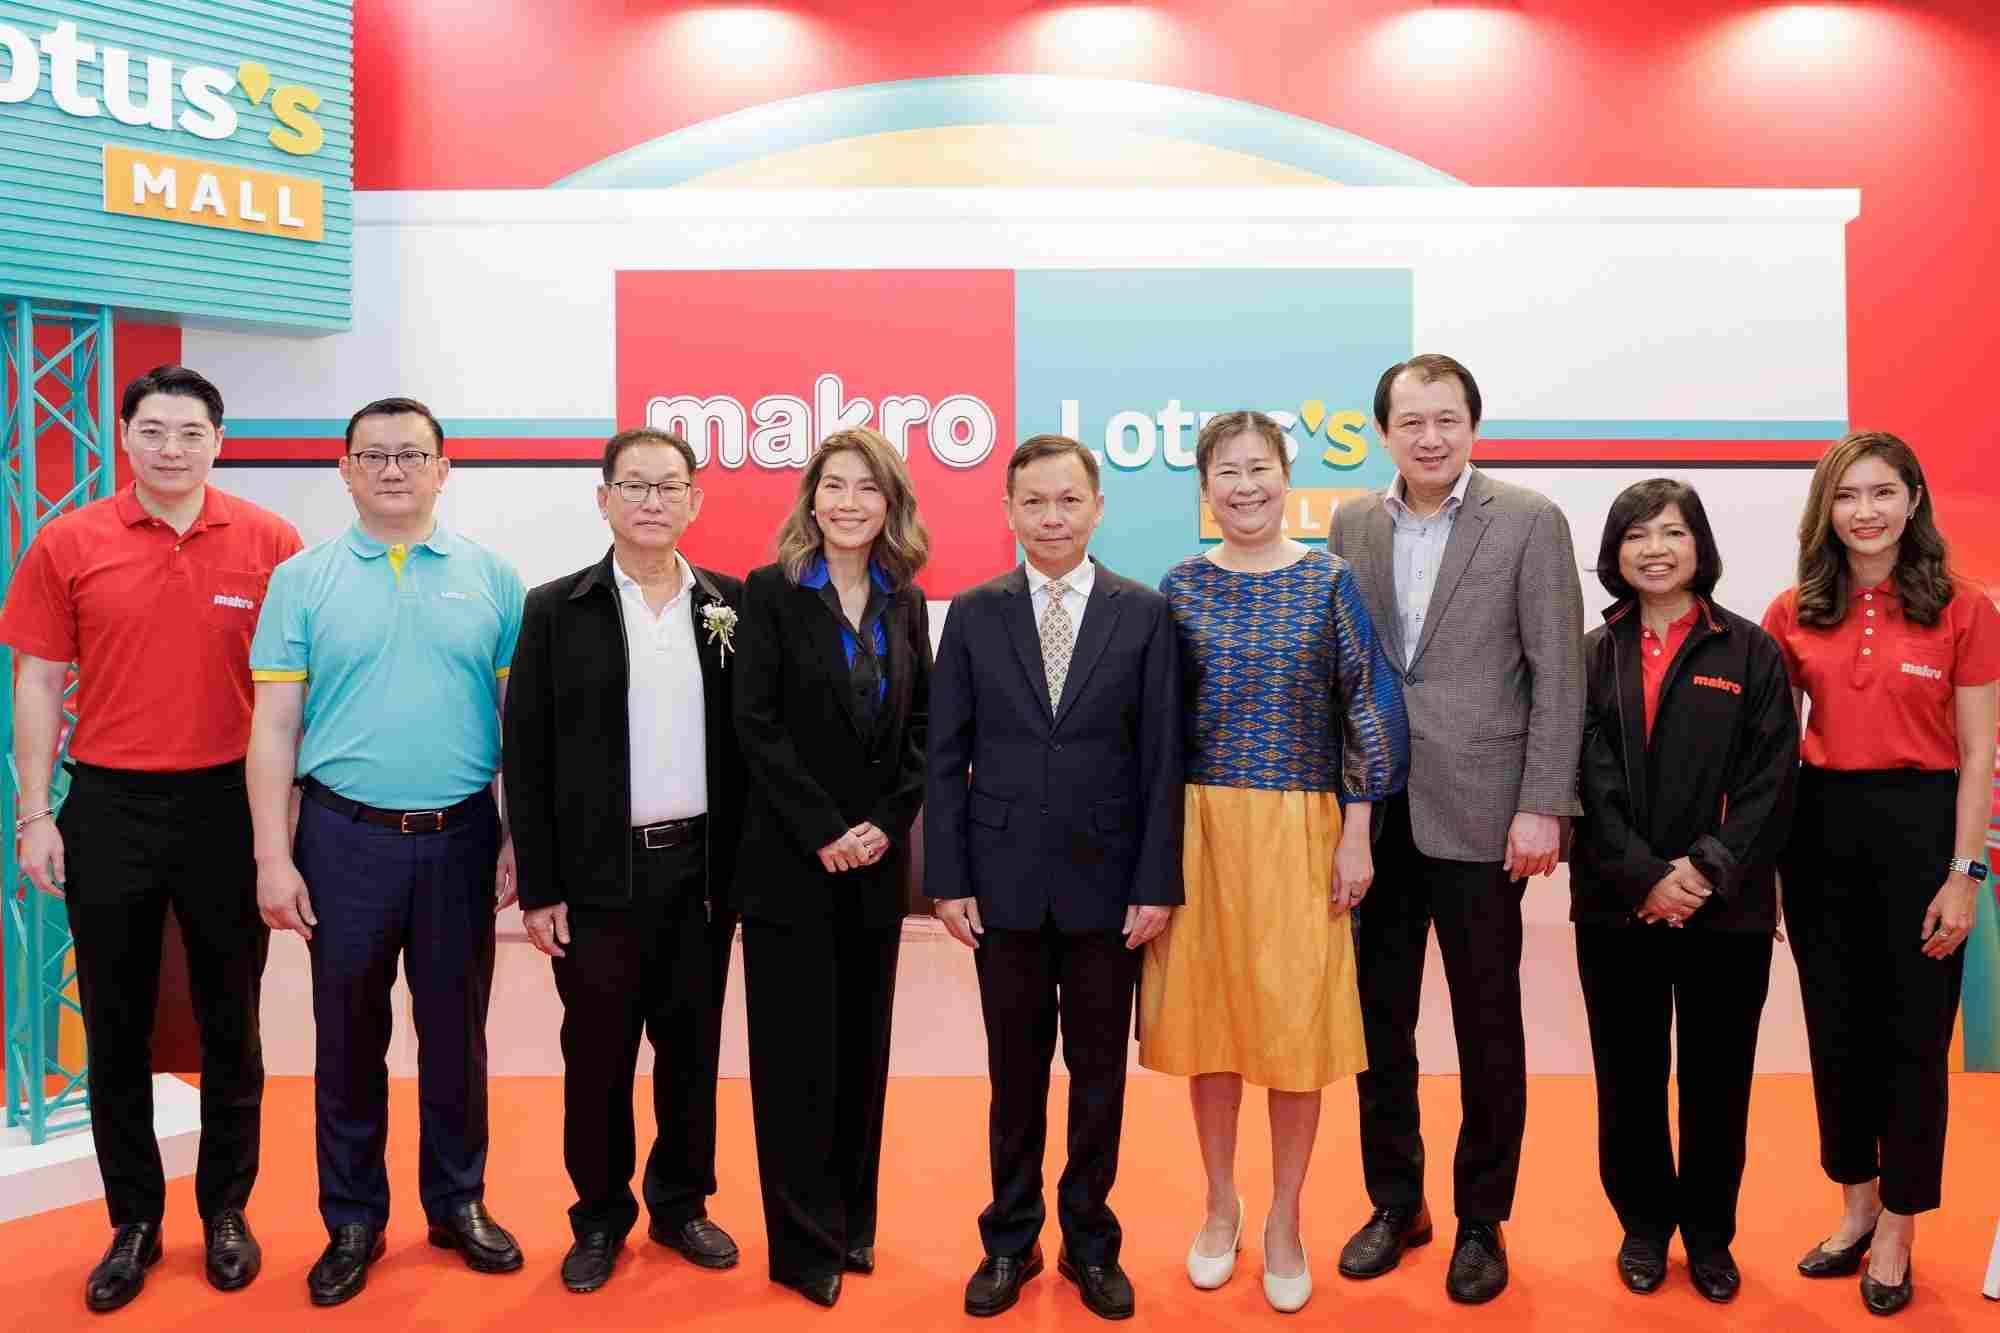 แม็คโคร สมุทรปราการ “Hybrid Wholesale” ที่แรกในไทย